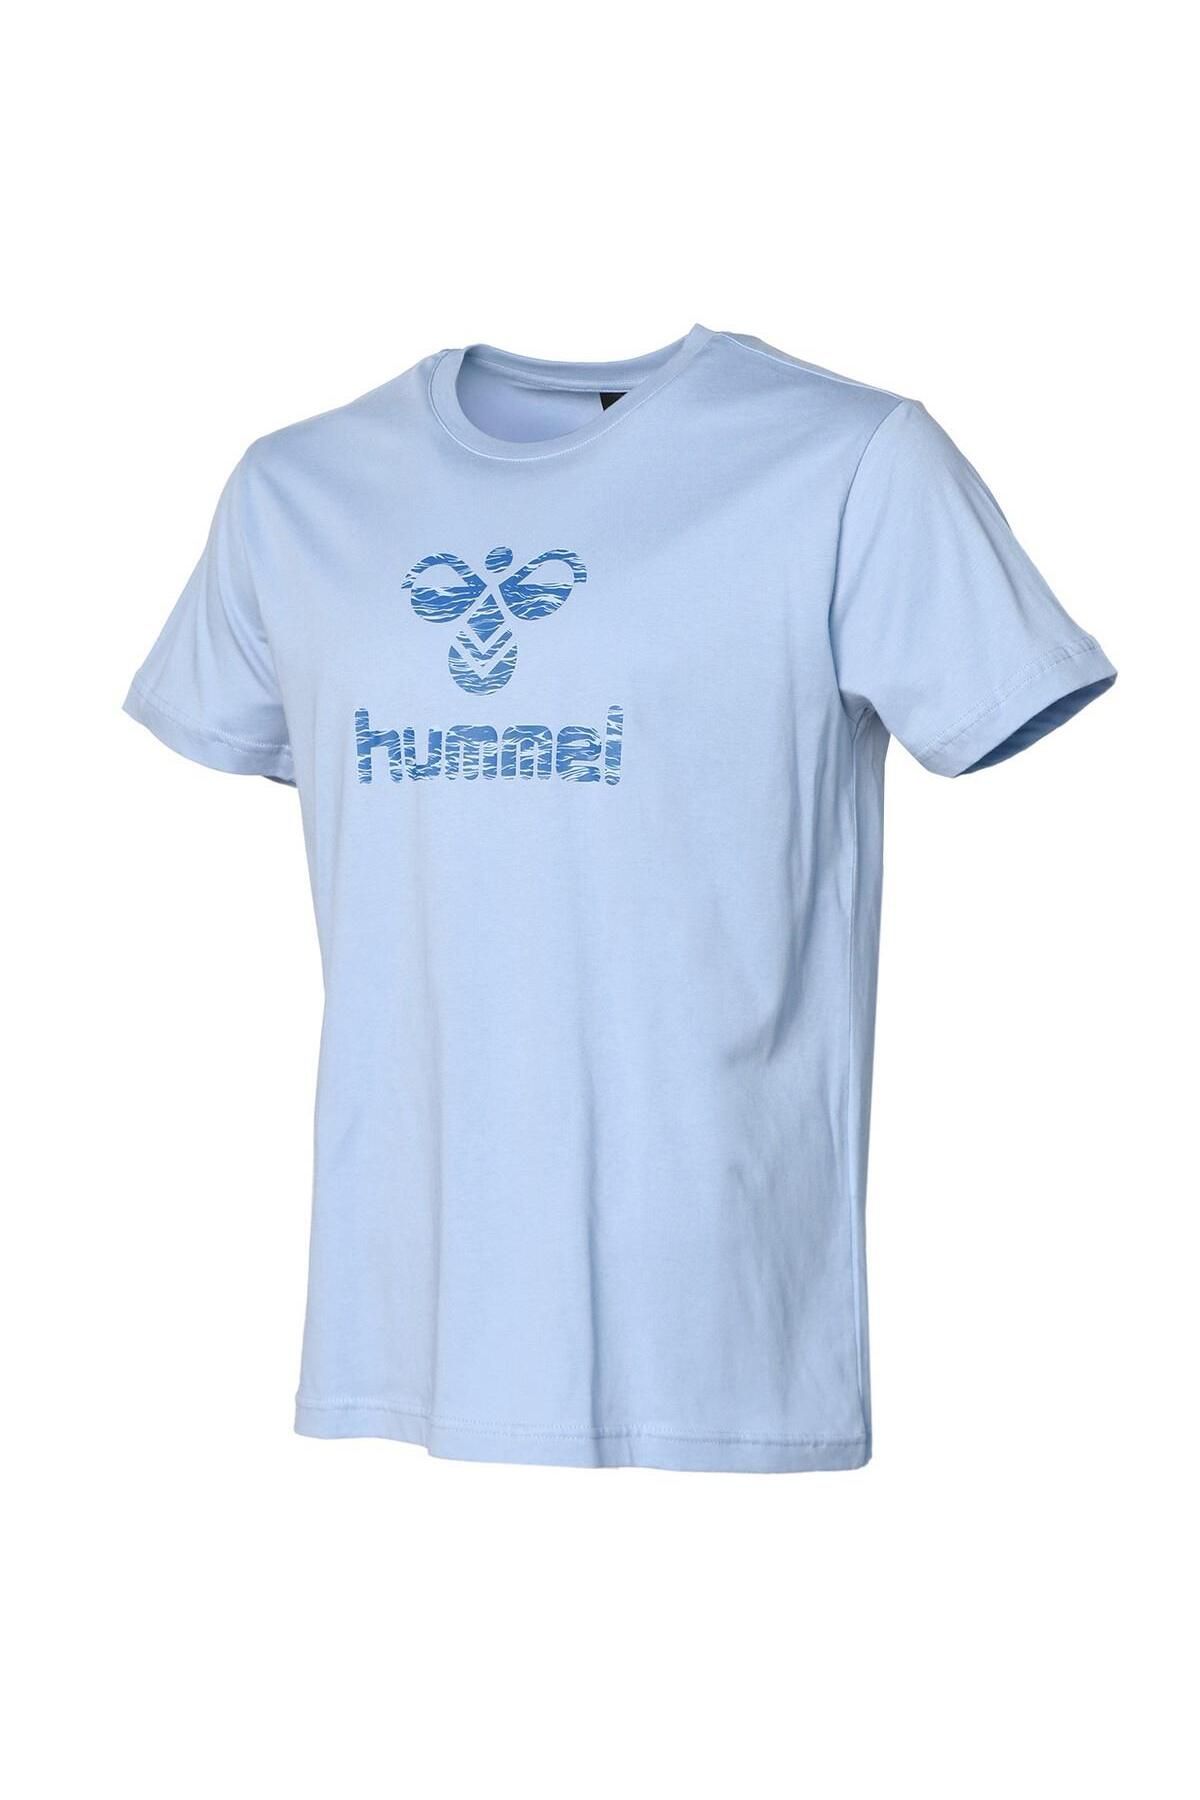 hummel 911666-2225 Huxley Erkek T-shirt